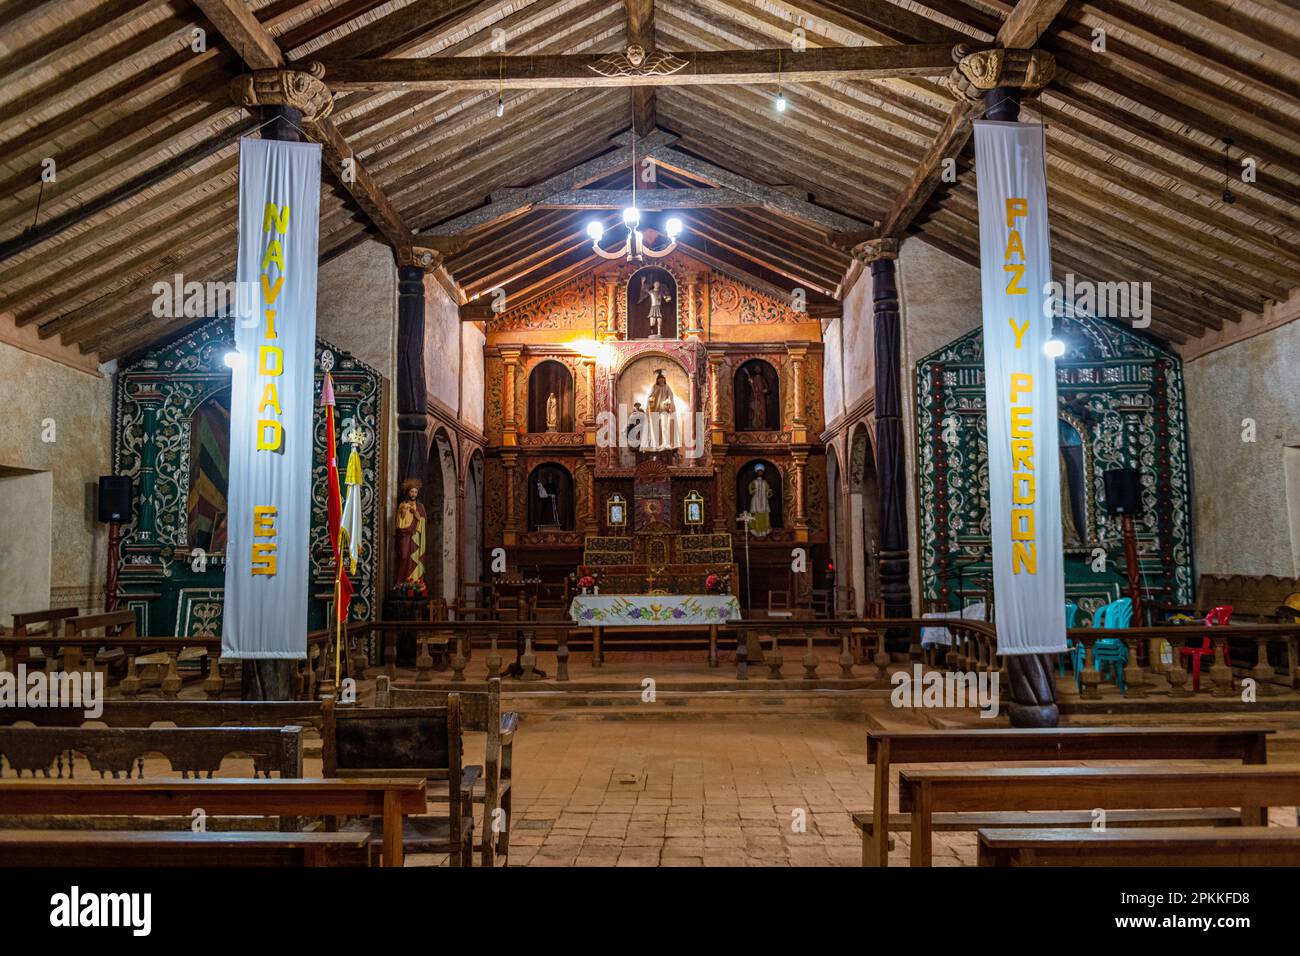 Intérieur de l'église de la mission Santa Ana de Velasco, missions jésuites de Chiquitos, site du patrimoine mondial de l'UNESCO, département de Santa Cruz, Bolivie Banque D'Images